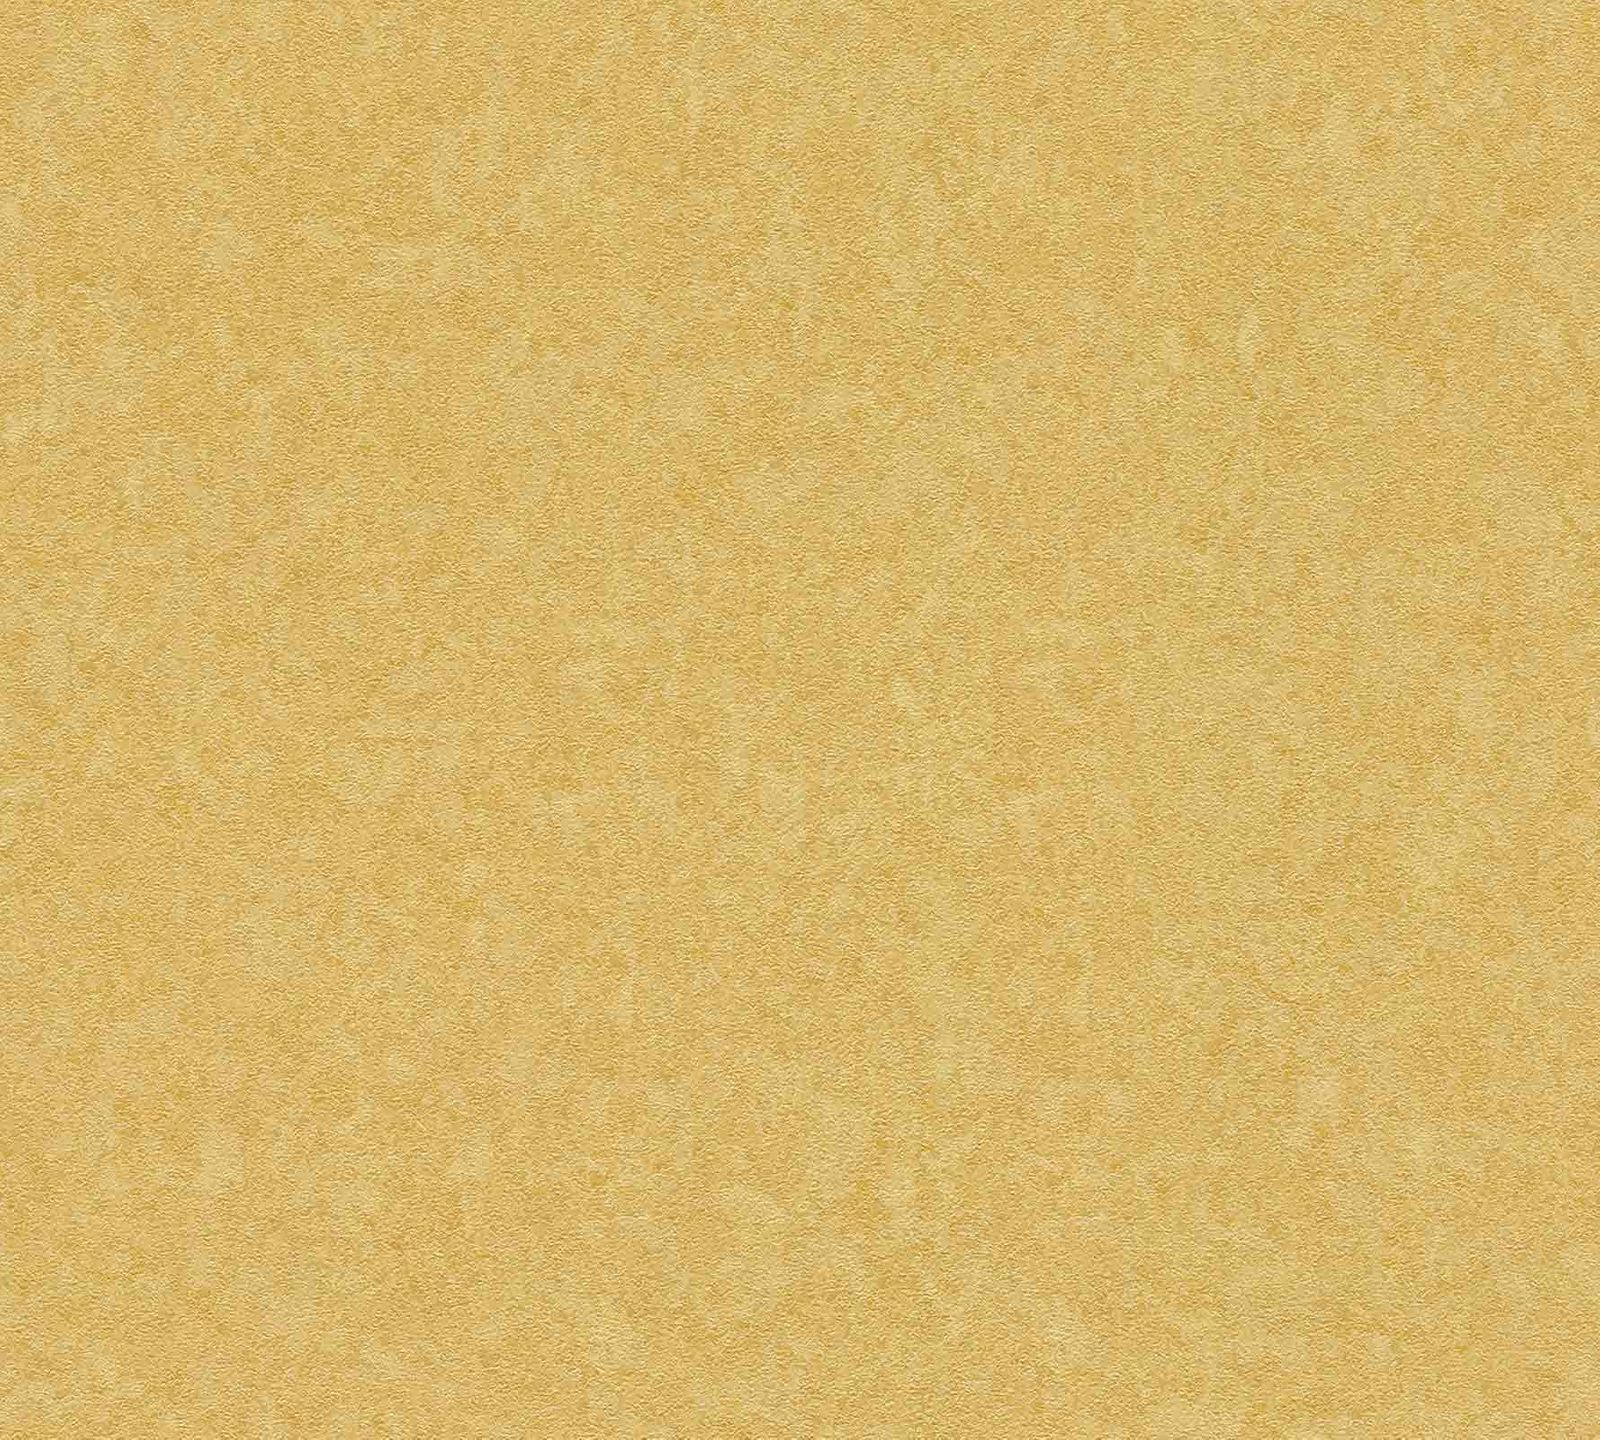 Luxurious Plain Gold Textured Wallpaper Wallpaper